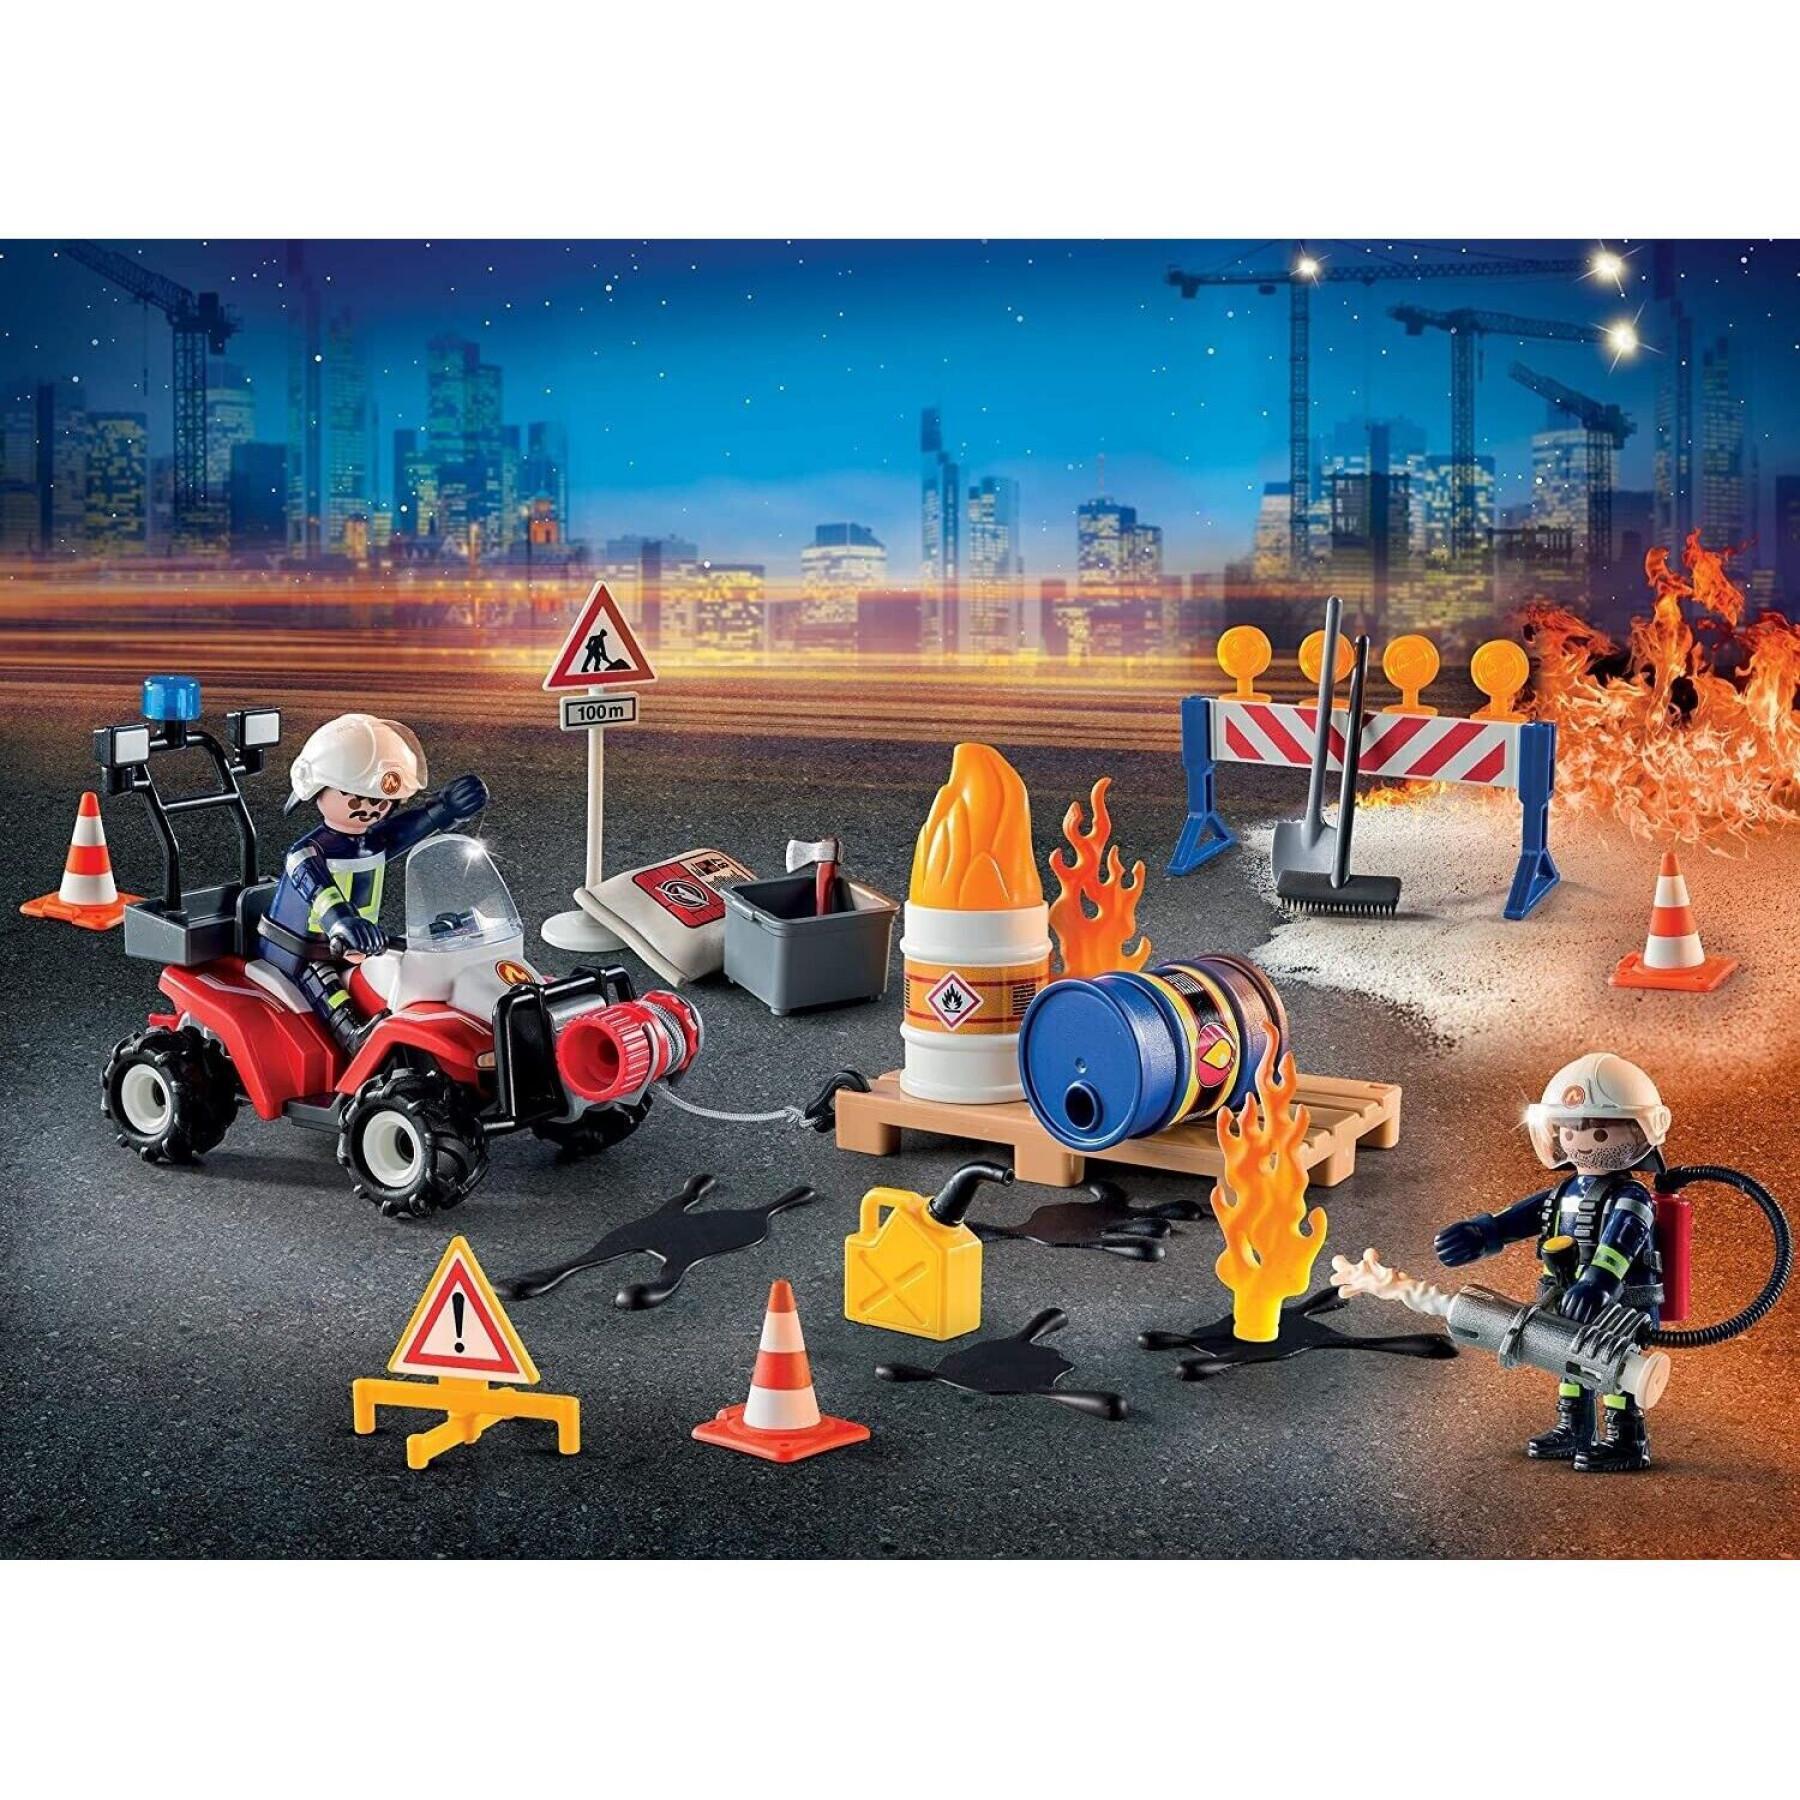 Calendario de Adviento para bomberos Playmobil